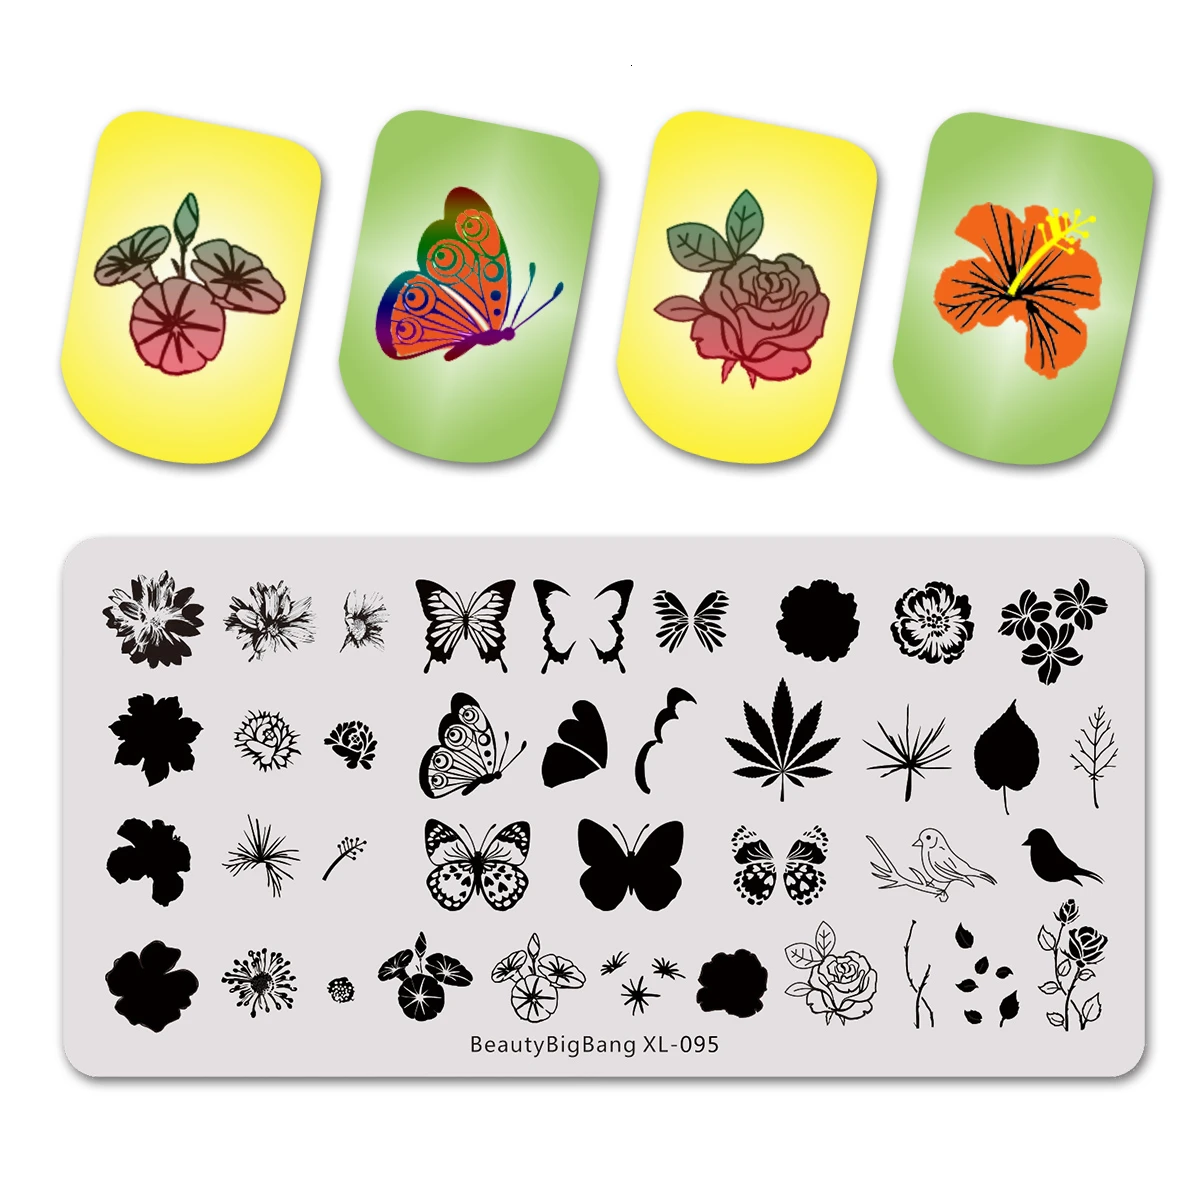 Beautybigbang новые пластины для штамповки ногтей натуральный цветок тема белка кактус печать изображения 12*6 см Дизайн ногтей трафарет шаблон плесень - Цвет: 95